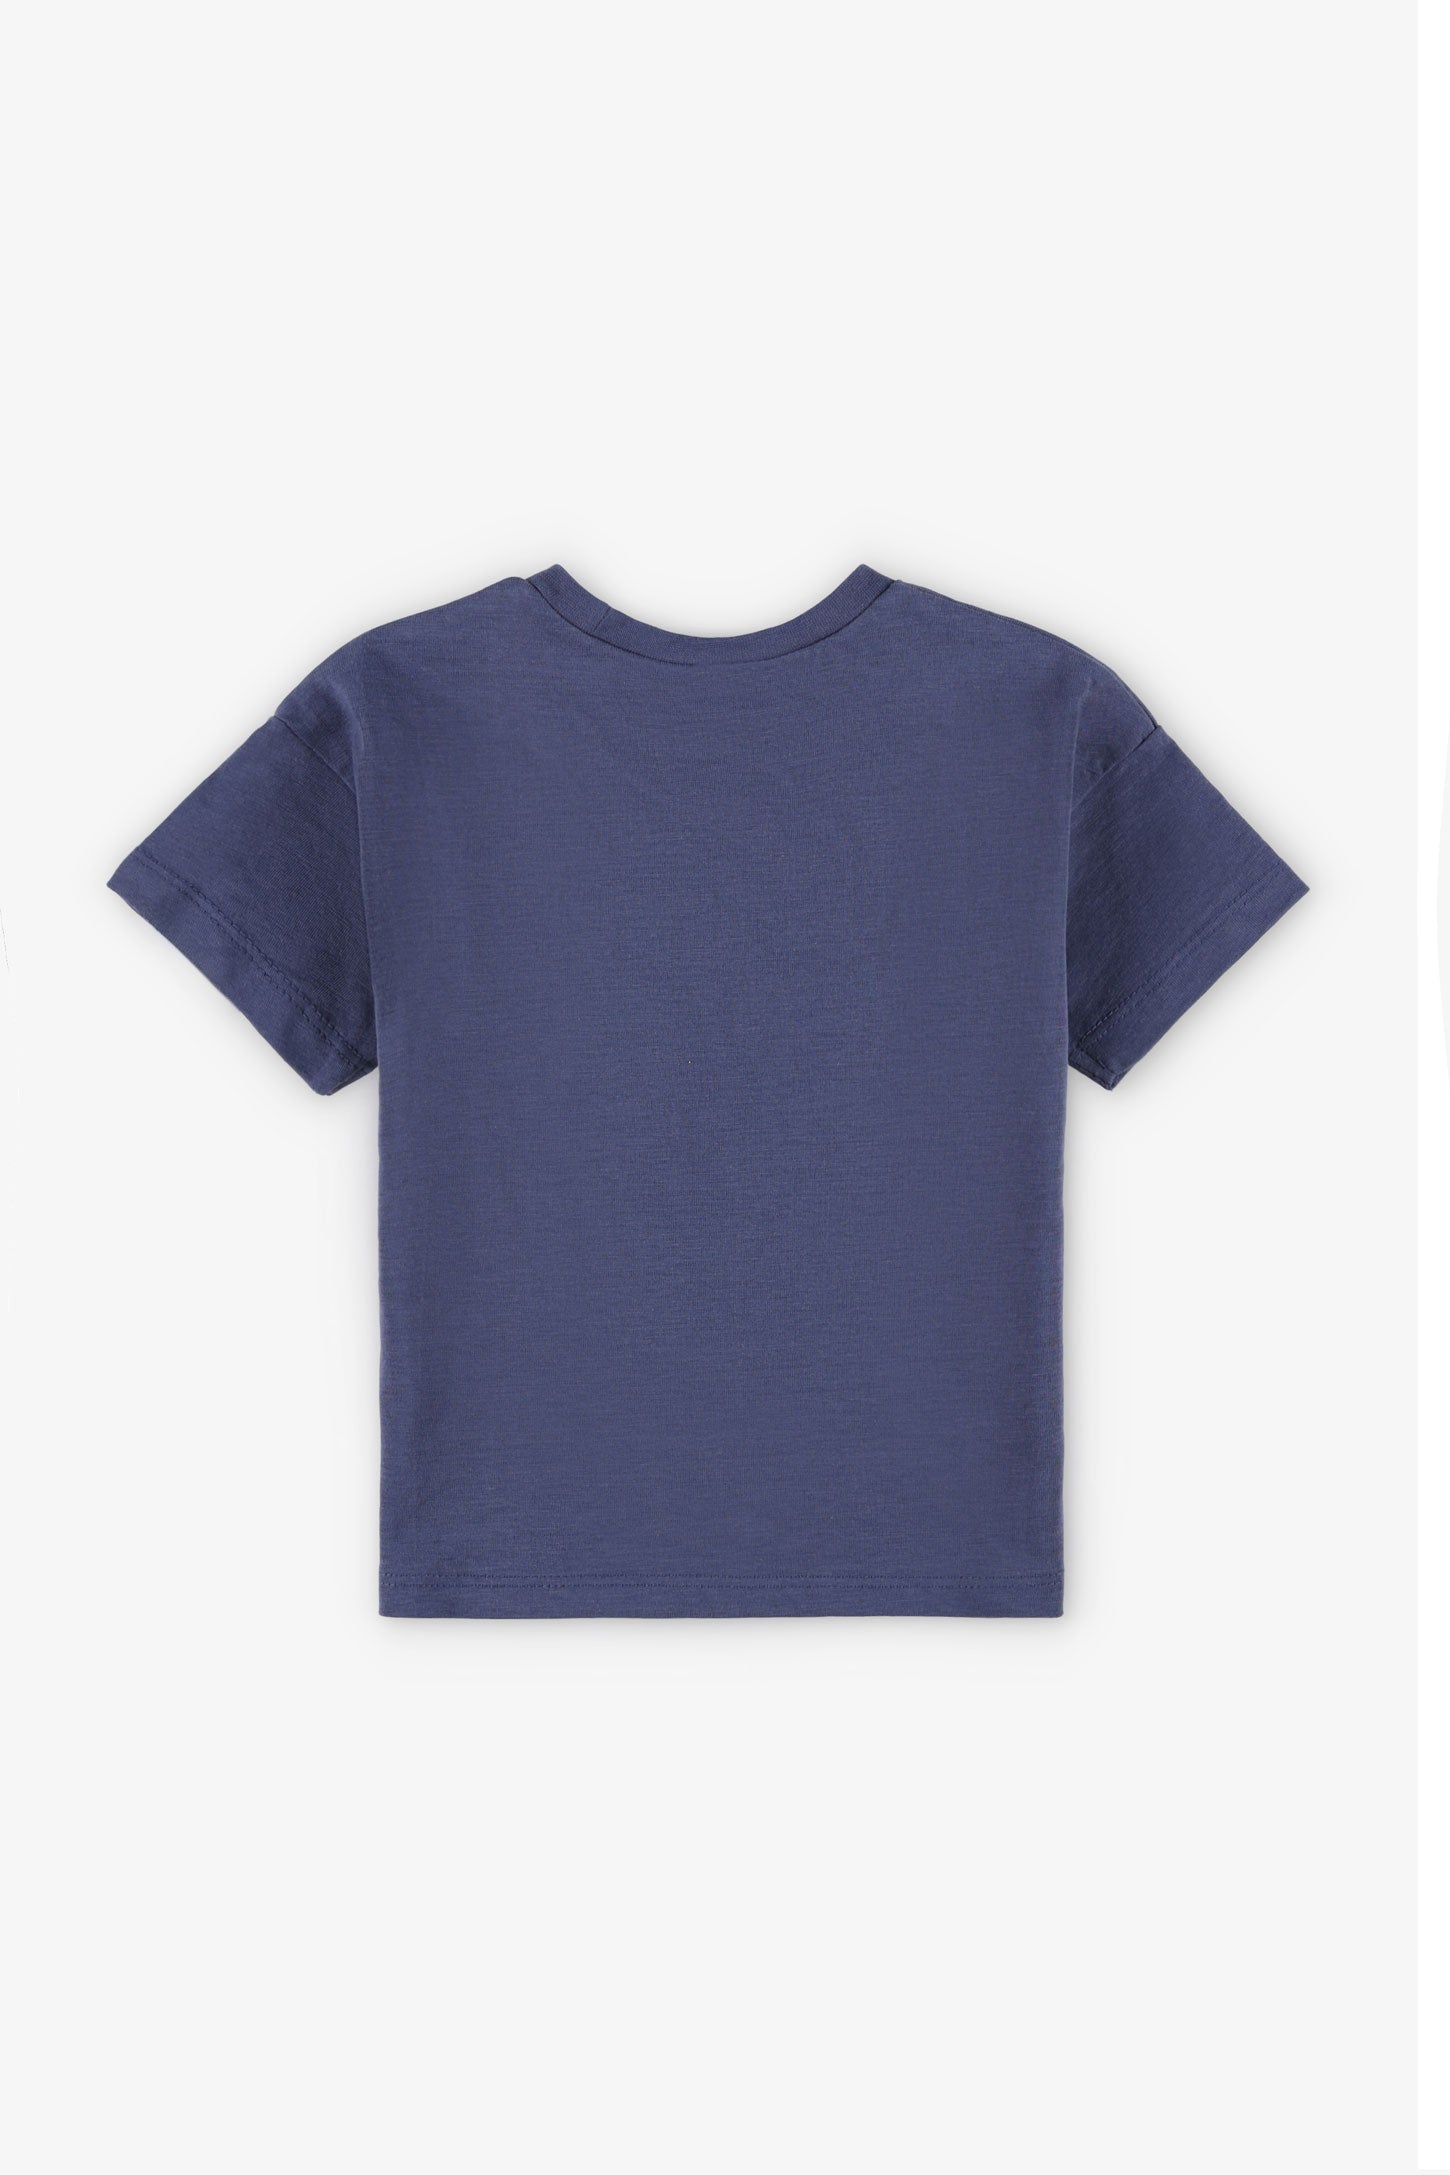 T-shirt coupe ample en coton, 2T-3T, 2/15$ - Bébé garçon && BLEU MARINE